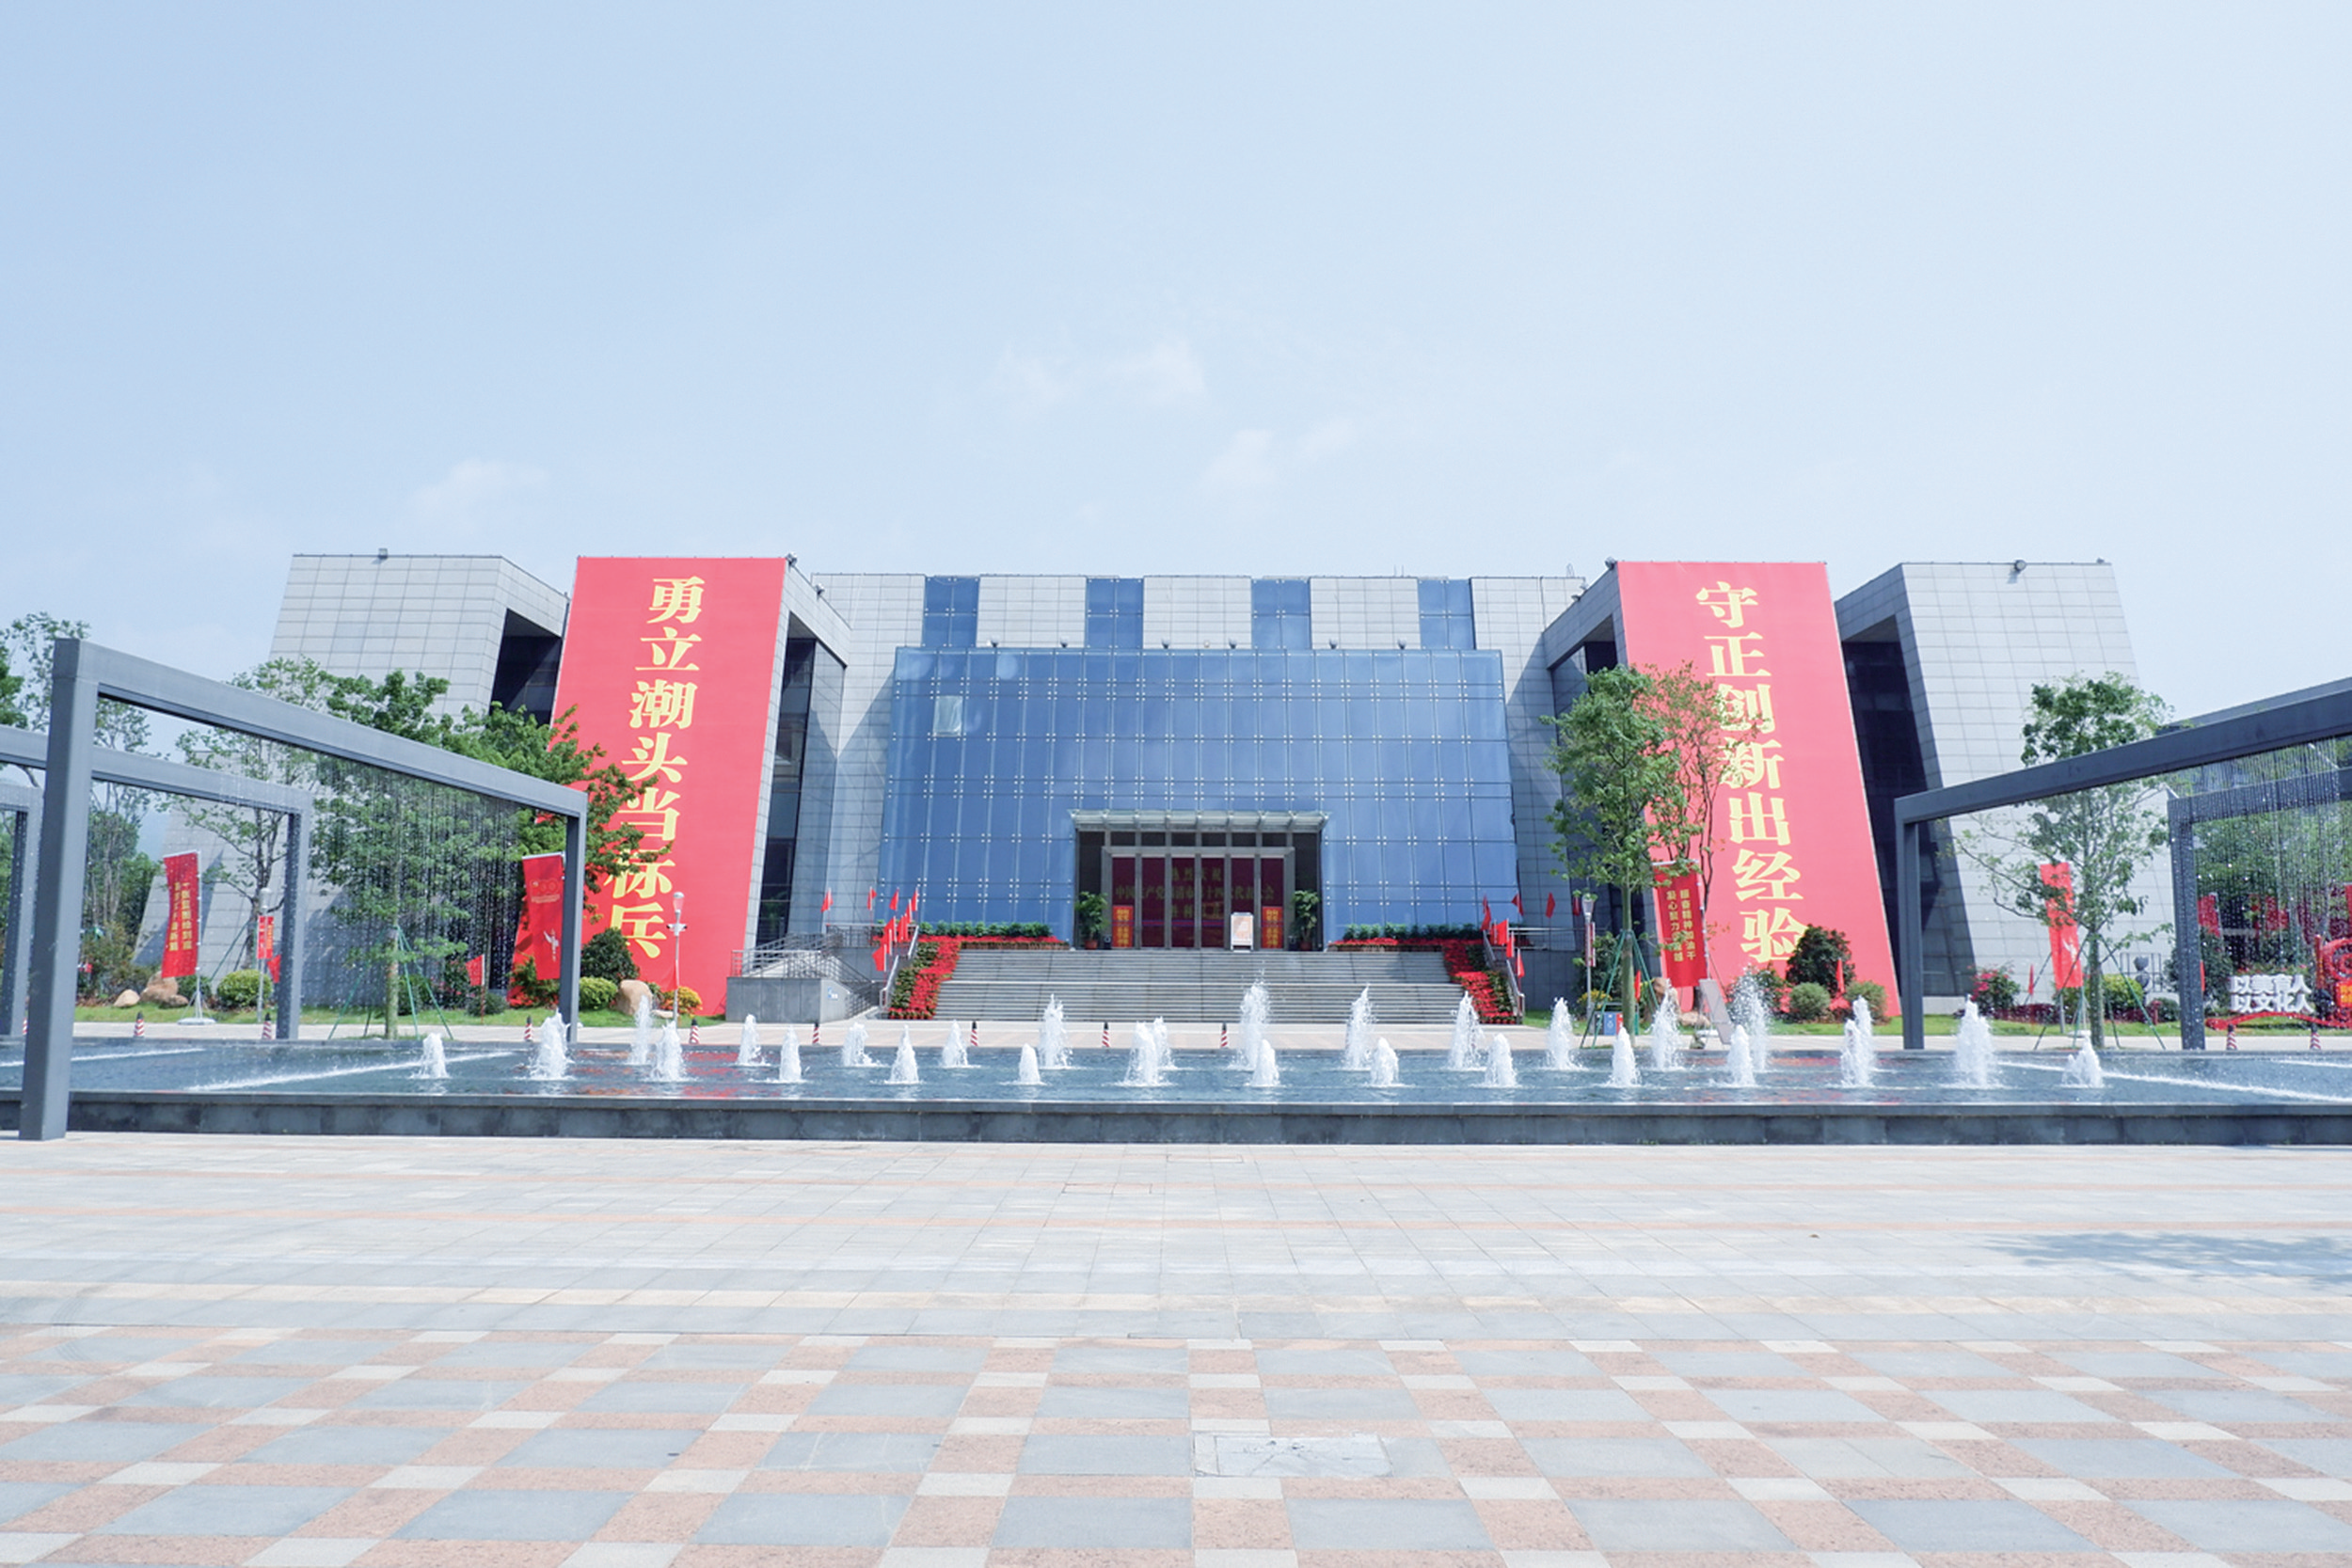 中国共产党福清市第十四次代表大会会场——福清市文化艺术中心装饰一新